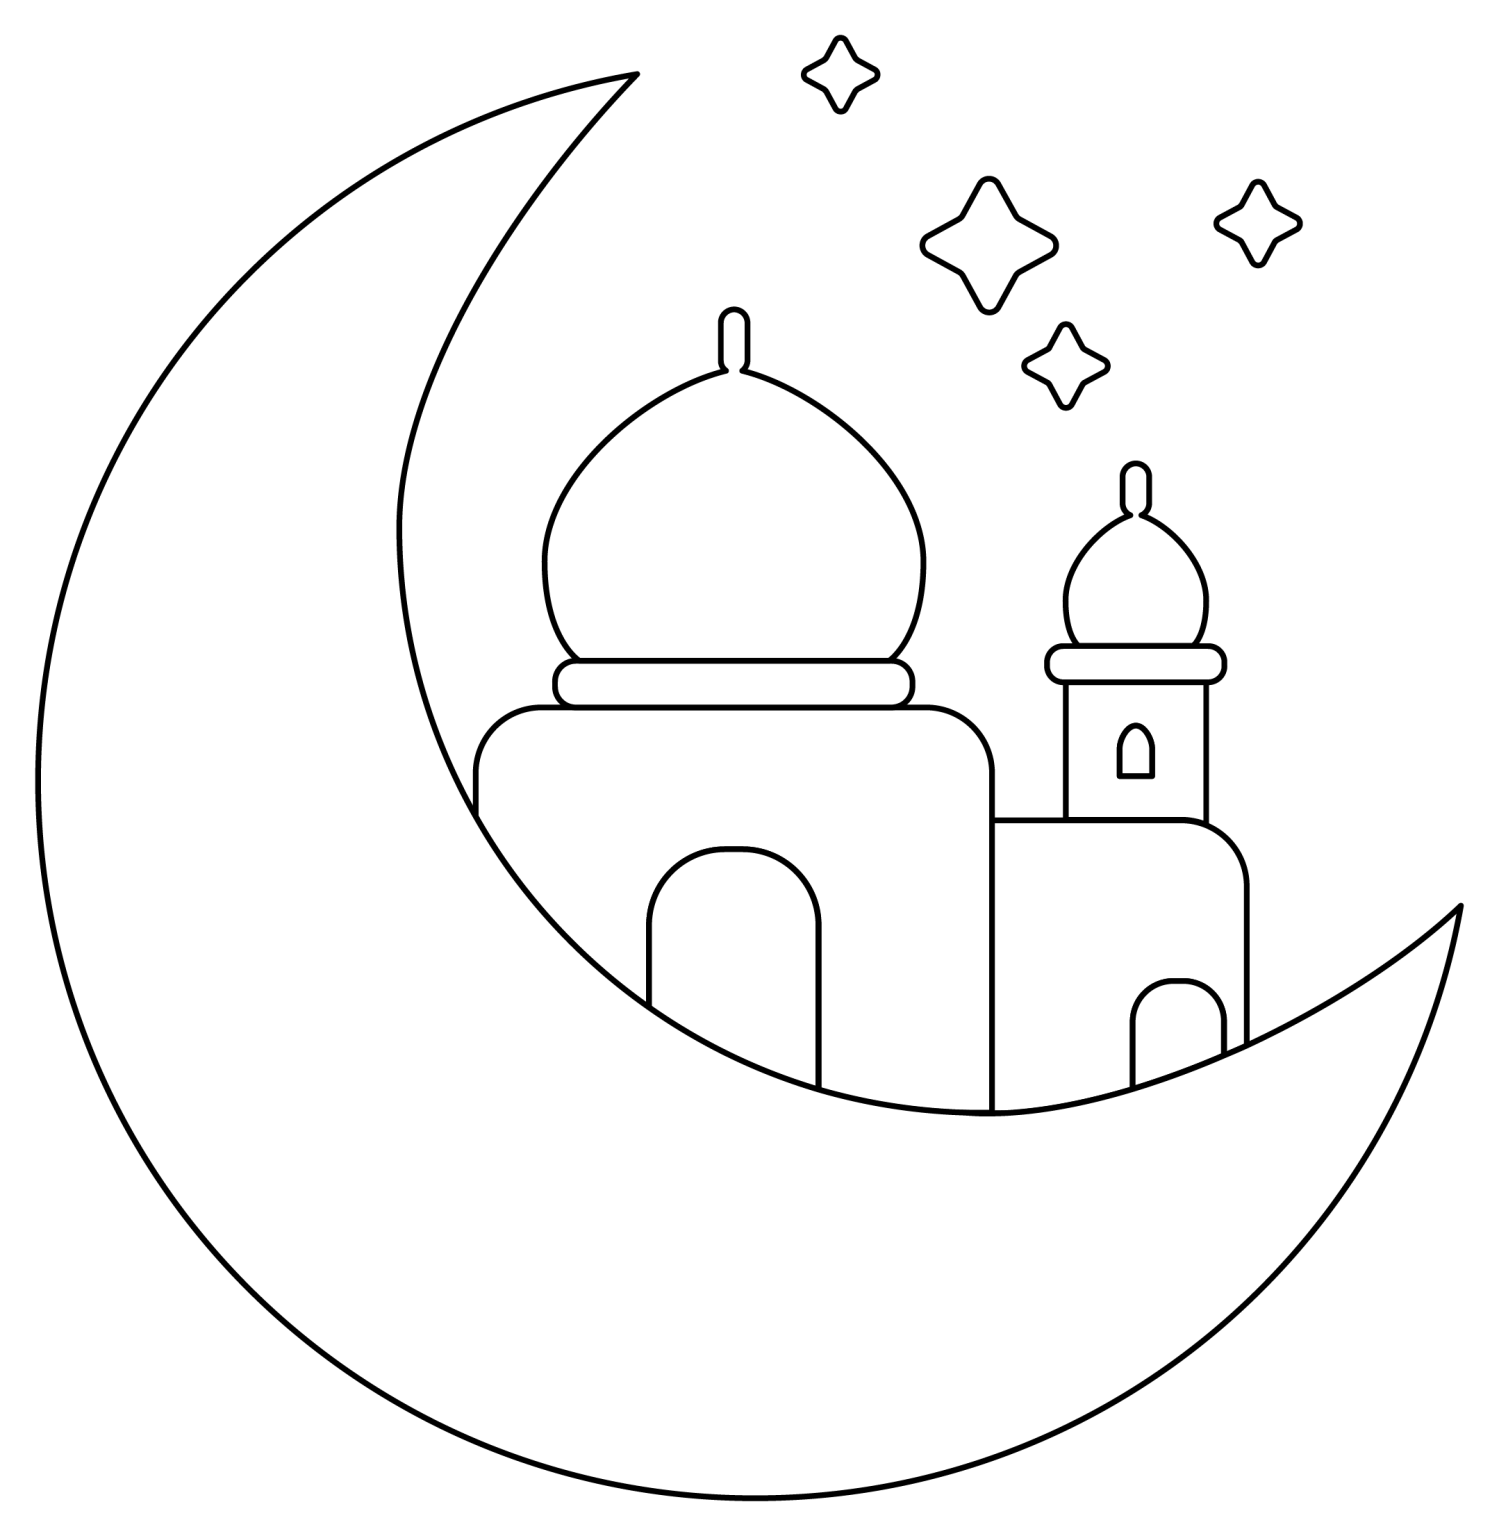 Раскраска рамадан для детей